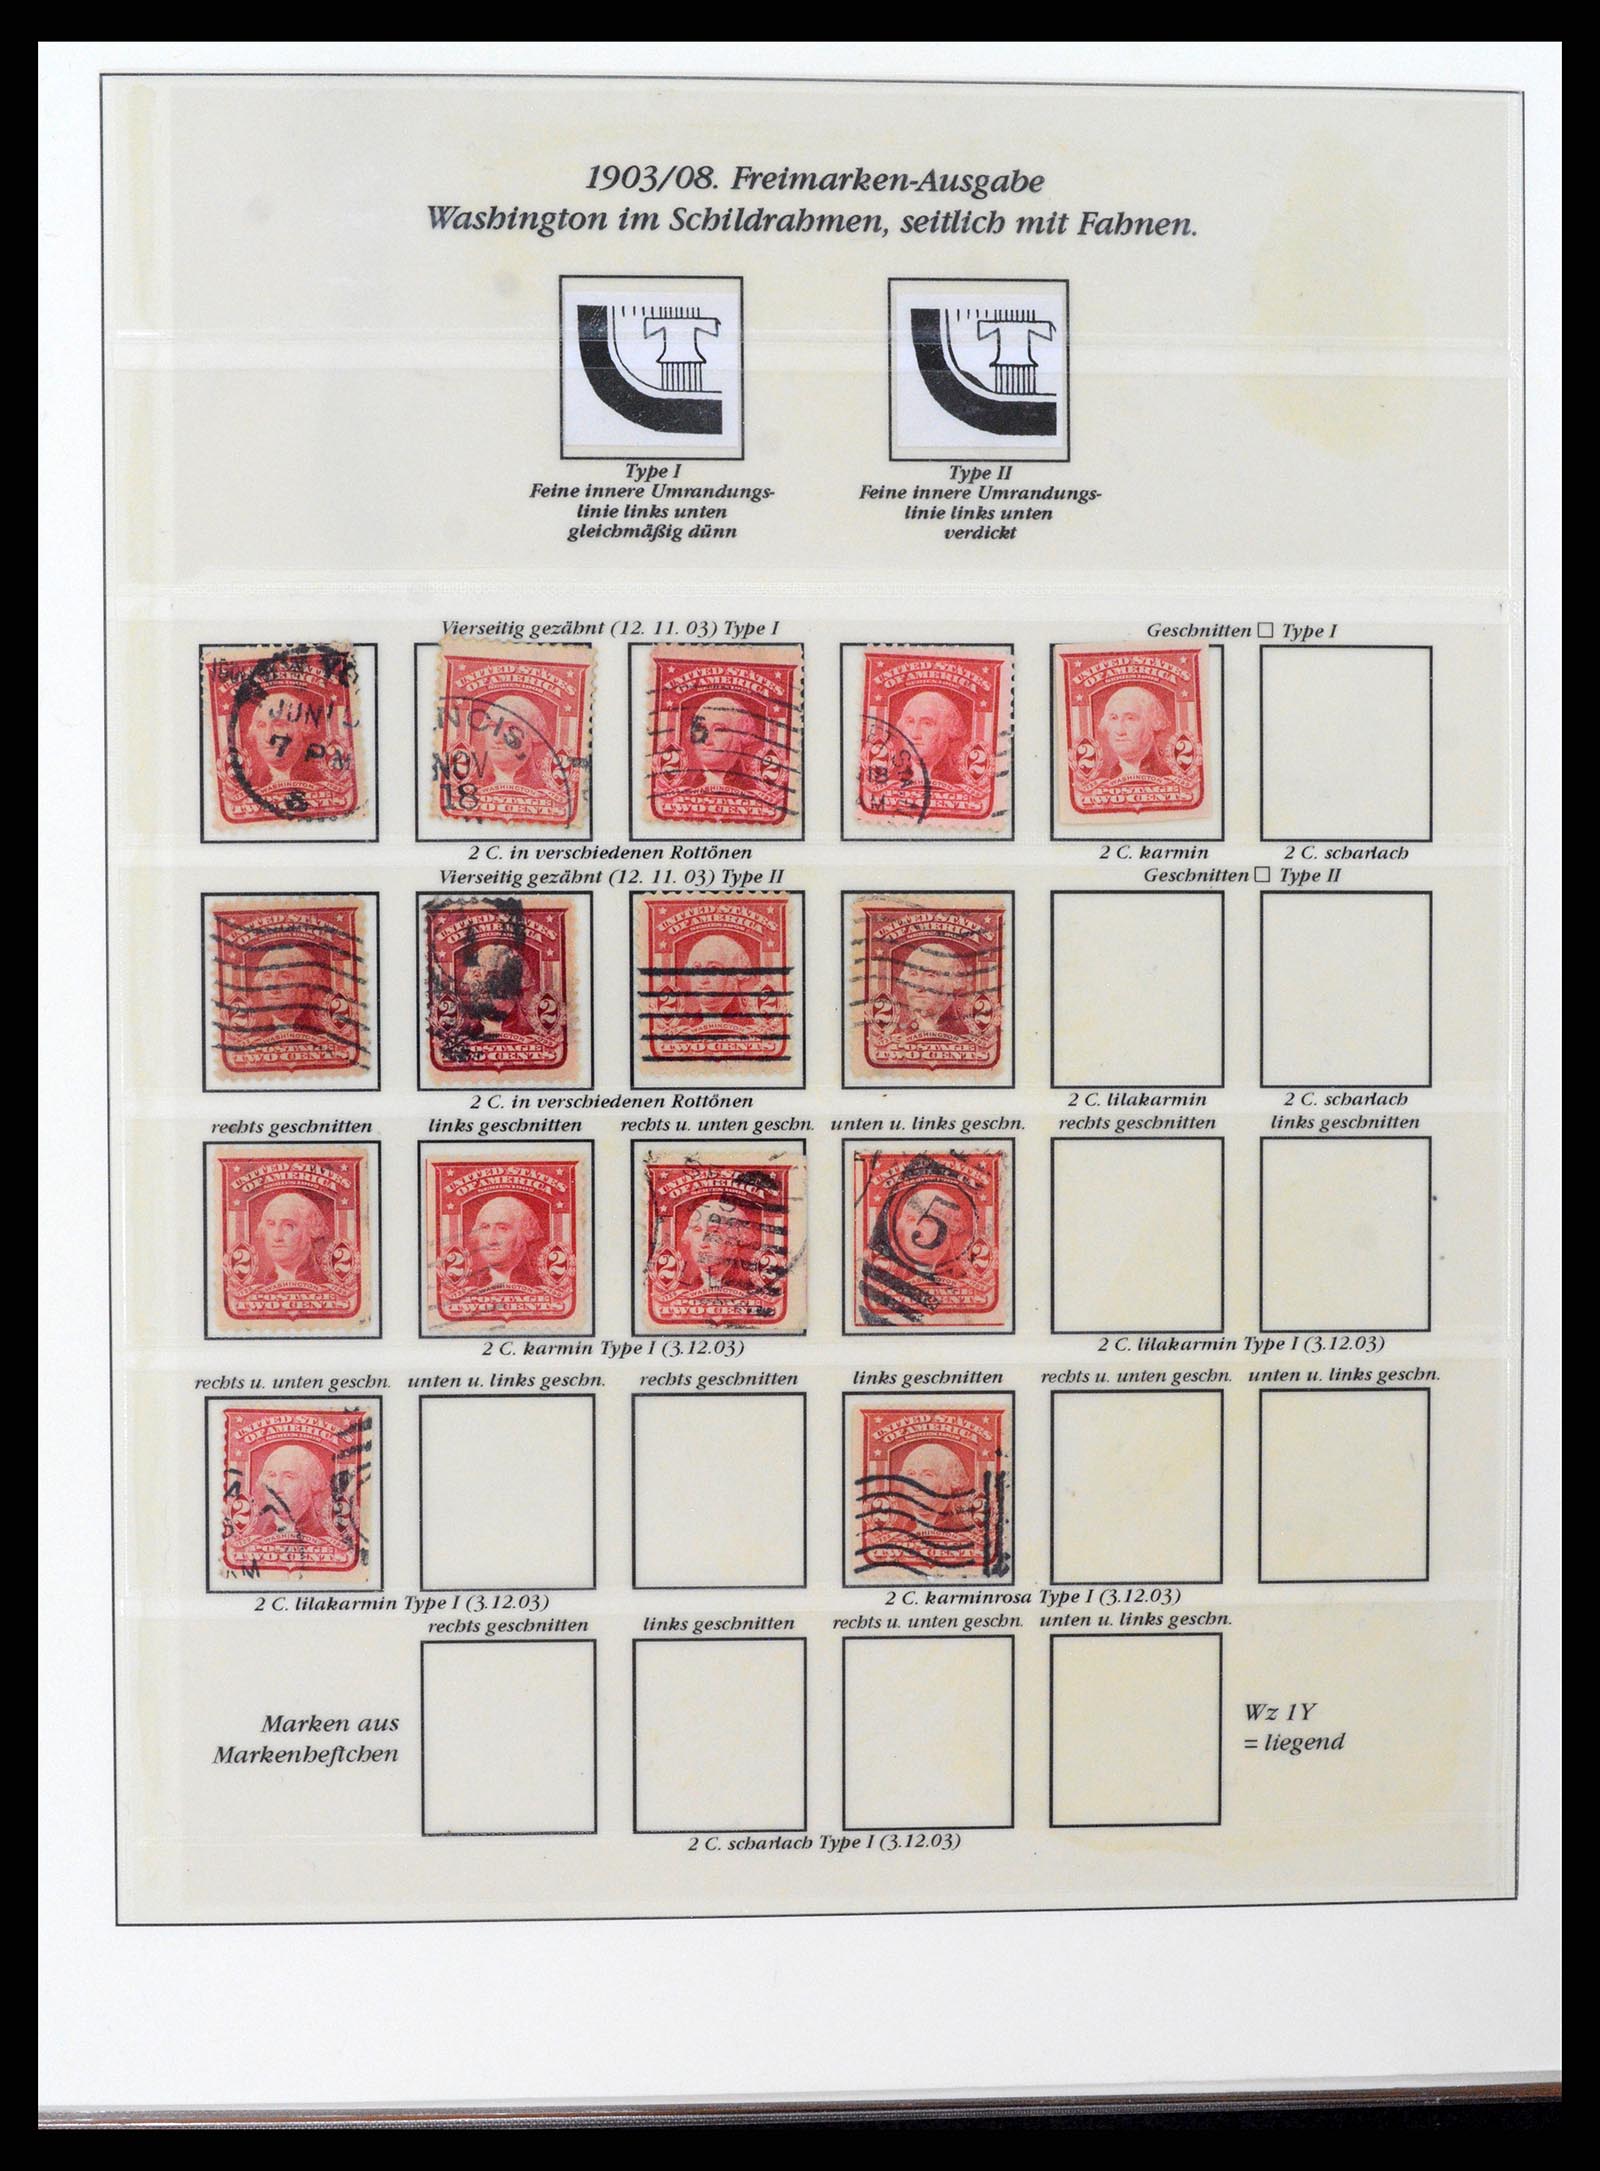 37653 027 - Stamp collection 37653 USA 1870-1954.